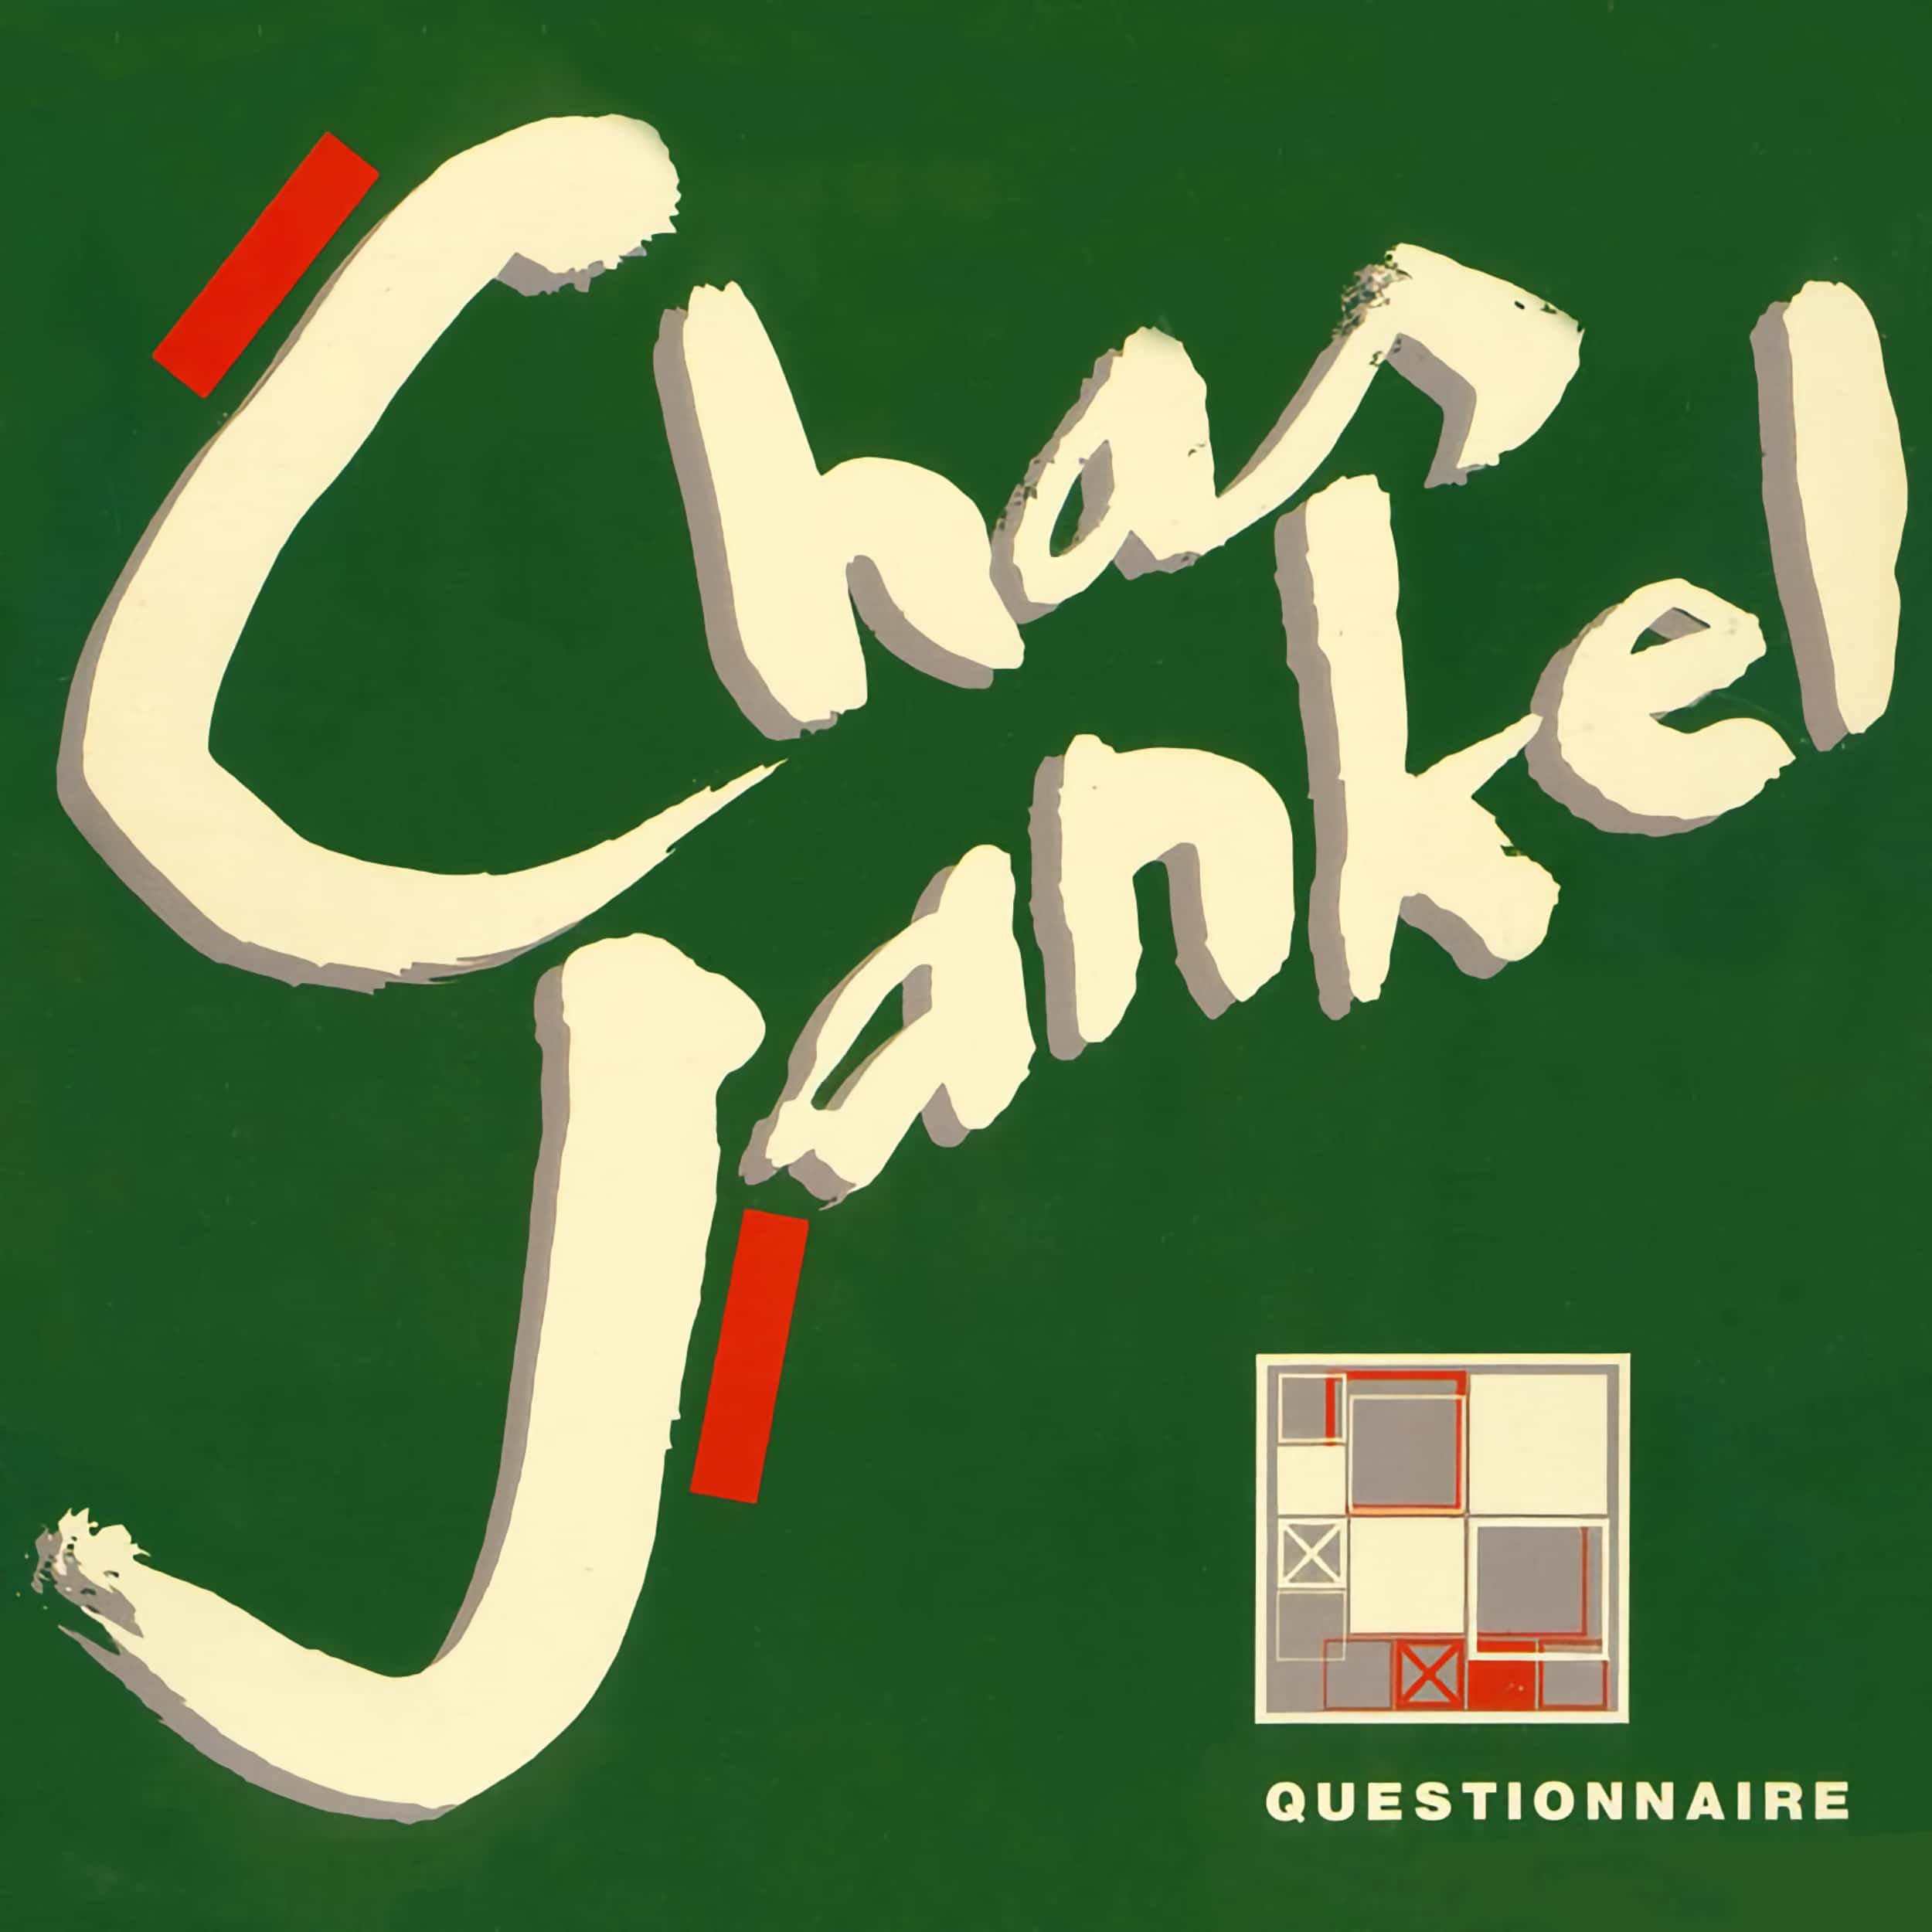 Chaz Jankel – Questionnaire